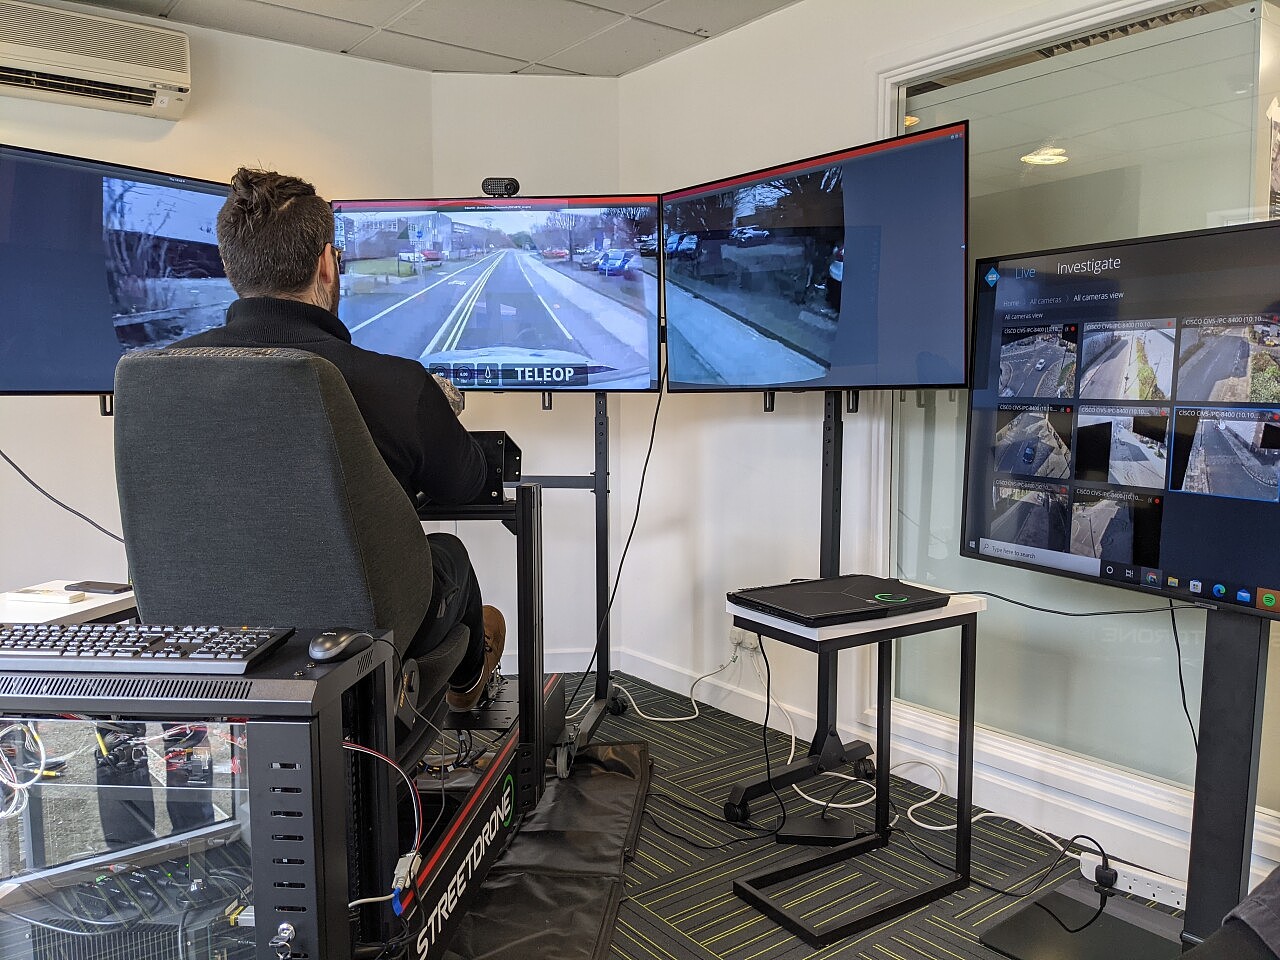 英国资助的一个项目正在道路上测试远程控制乘用车 - 2